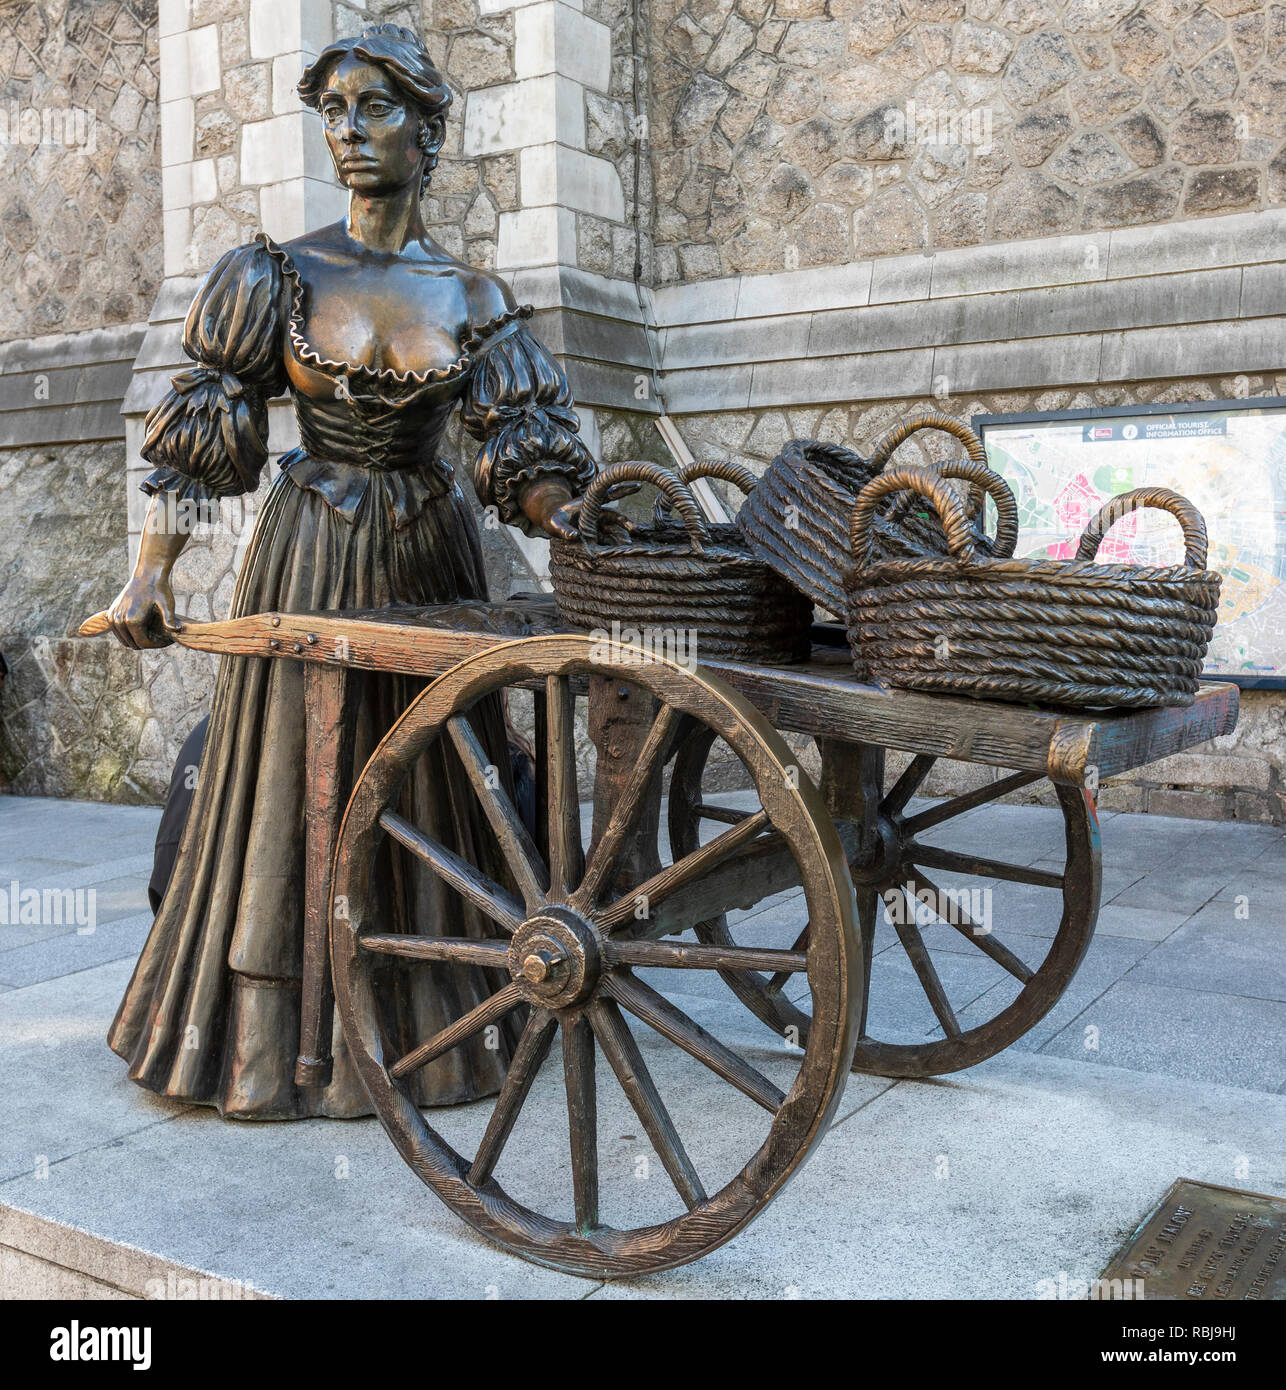 Statua di bronzo del carattere fictional Molly Malone a Dublino, Irlanda. Foto Stock